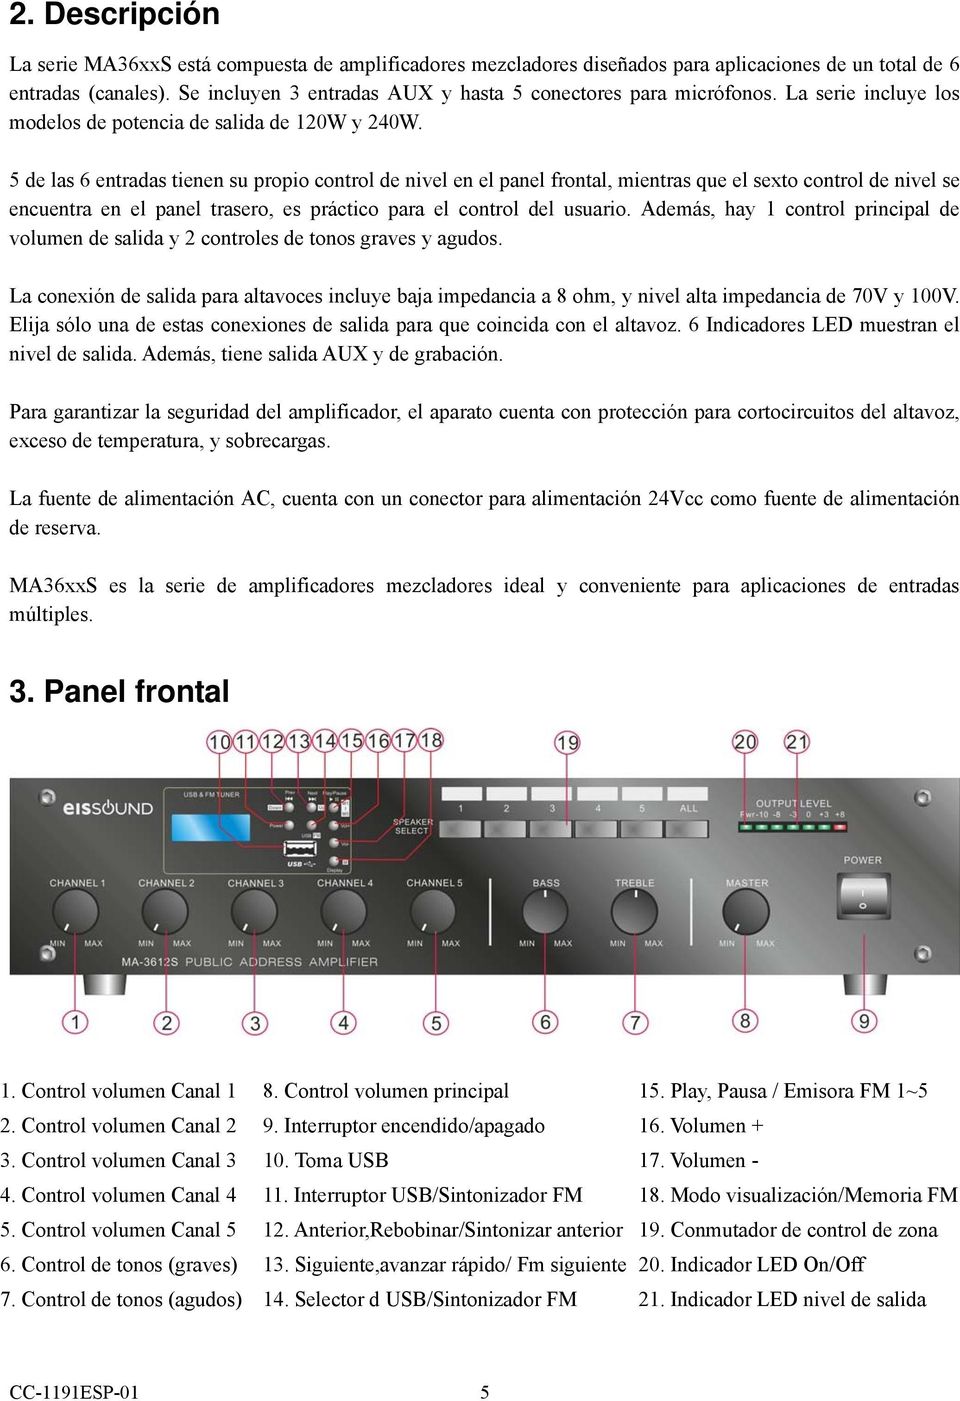 5 de las 6 entradas tienen su propio control de nivel en el panel frontal, mientras que el sexto control de nivel se encuentra en el panel trasero, es práctico para el control del usuario.